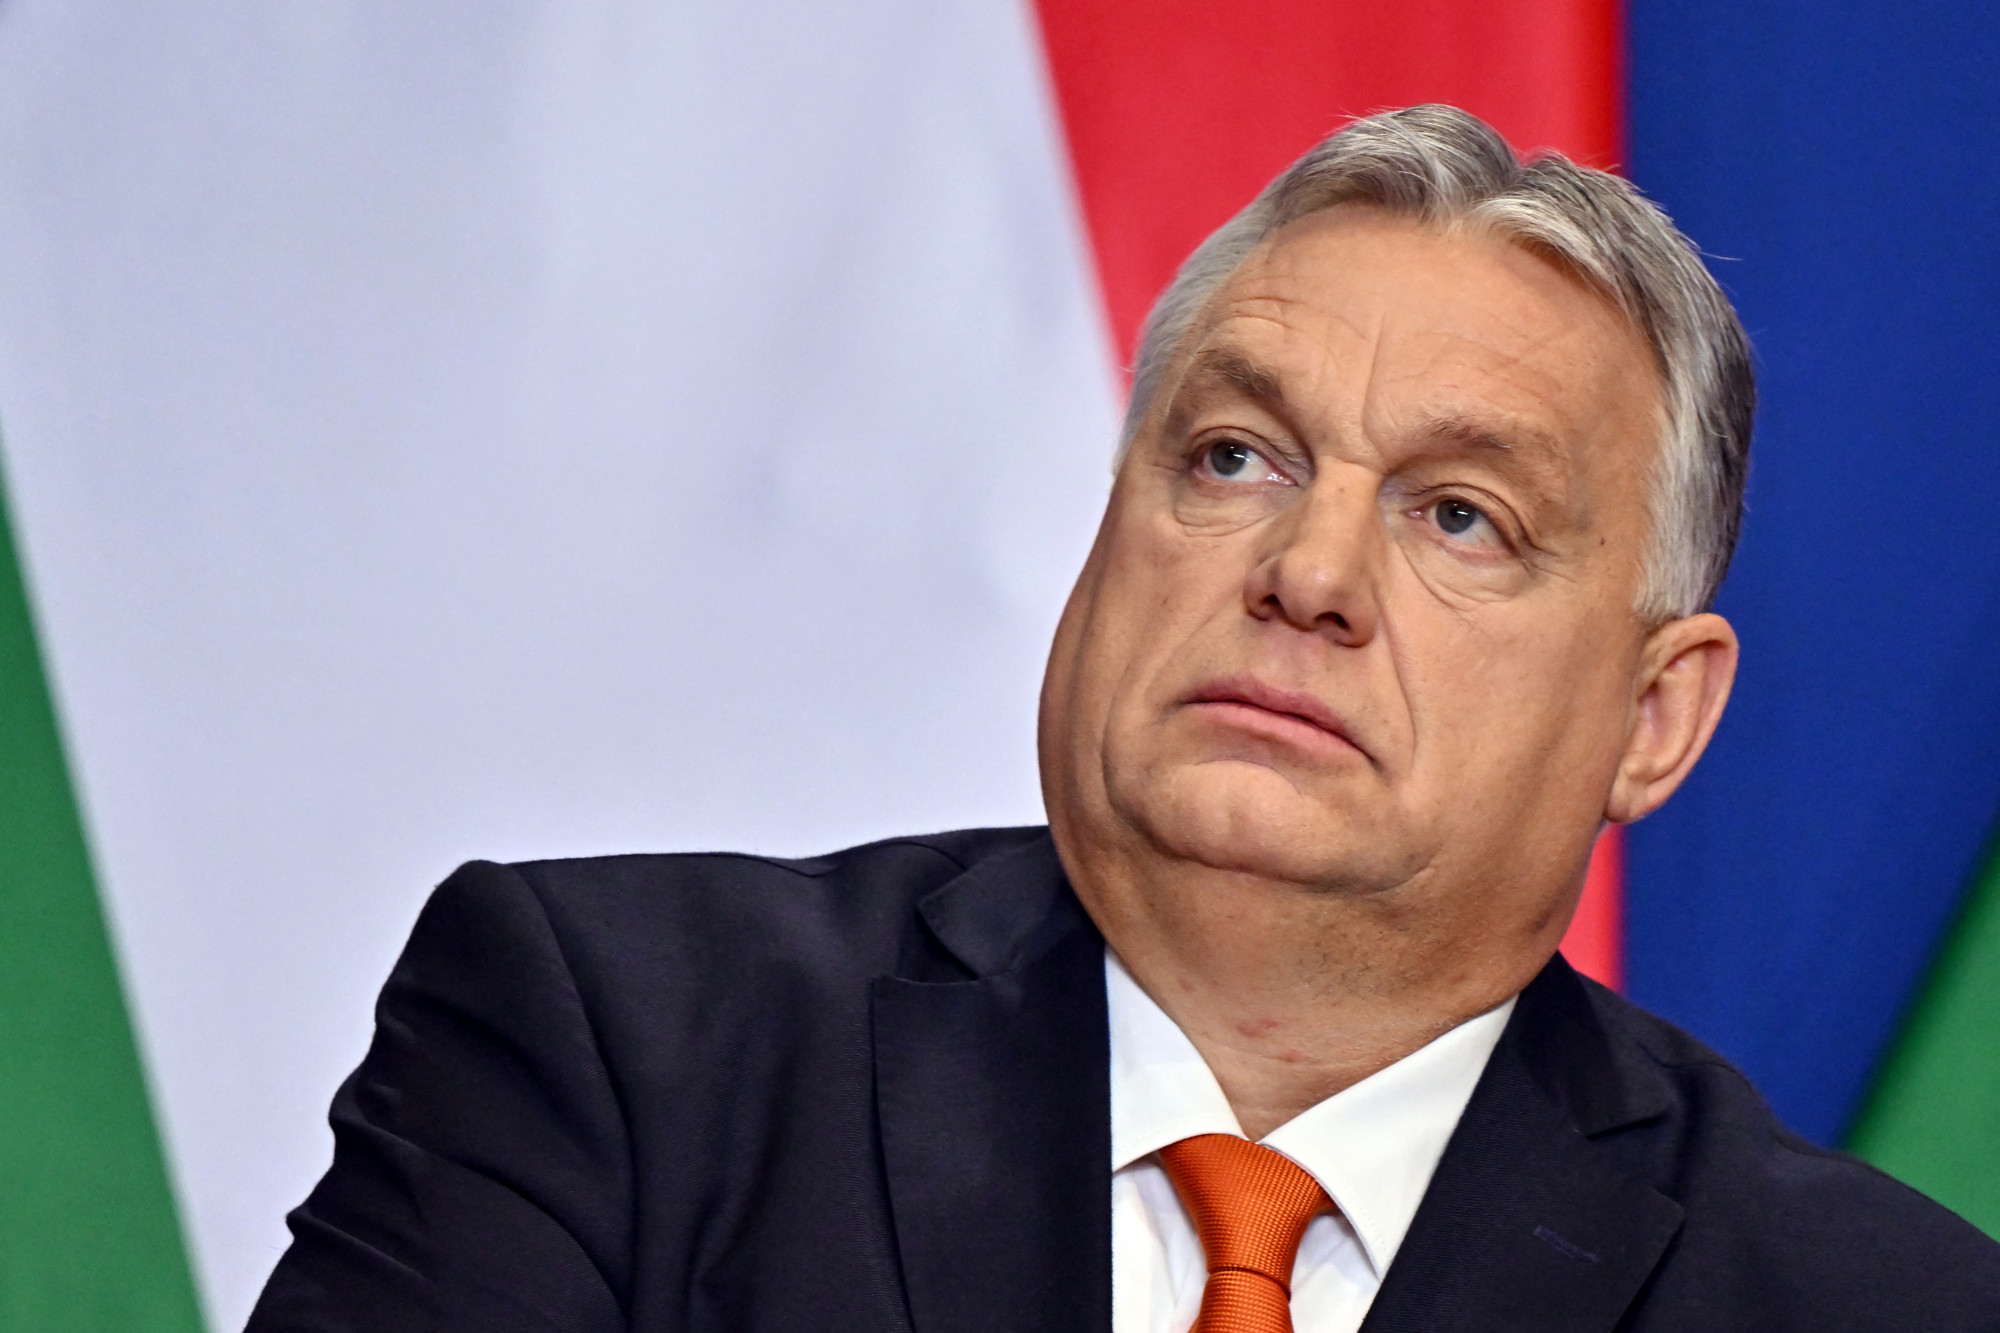 Orbánból kiábrándultak a lengyelek, de a szlovákok és bolgárok a magyaroknál is jobban szeretik őt